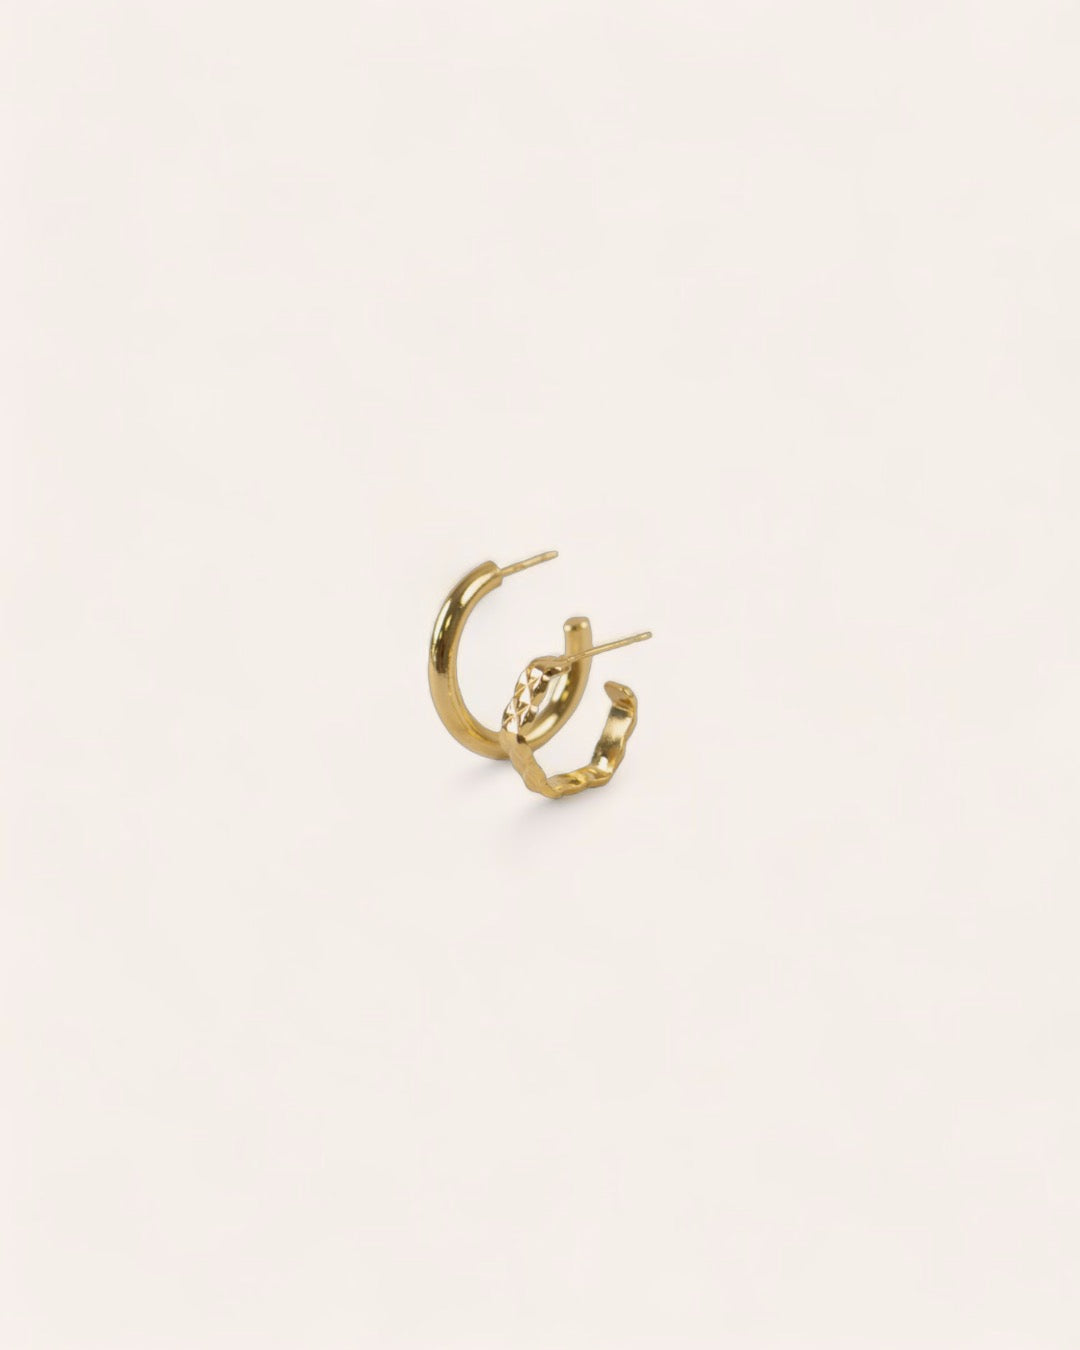 Composition de deux boucles d'oreilles, avec une petite créole en anneau lisse, et une créole octogonale au motif losange en plaqué or 18 carats.